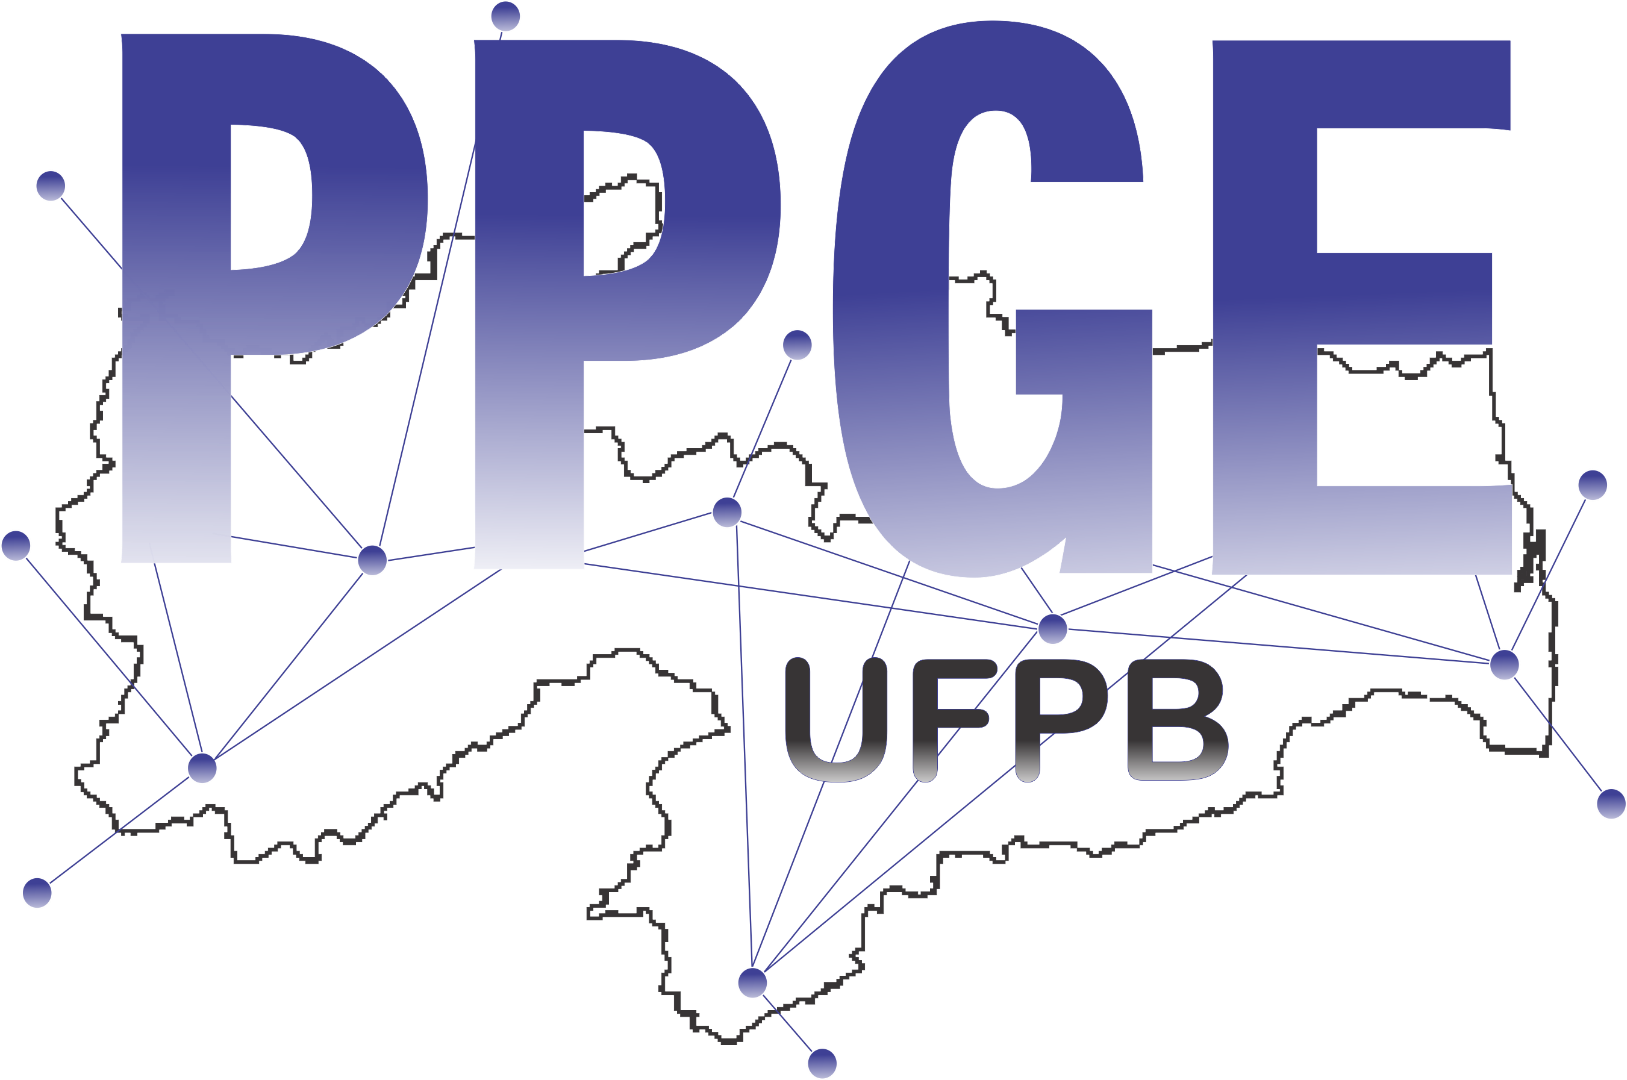 PPGE proposta logo 2.jpg.png